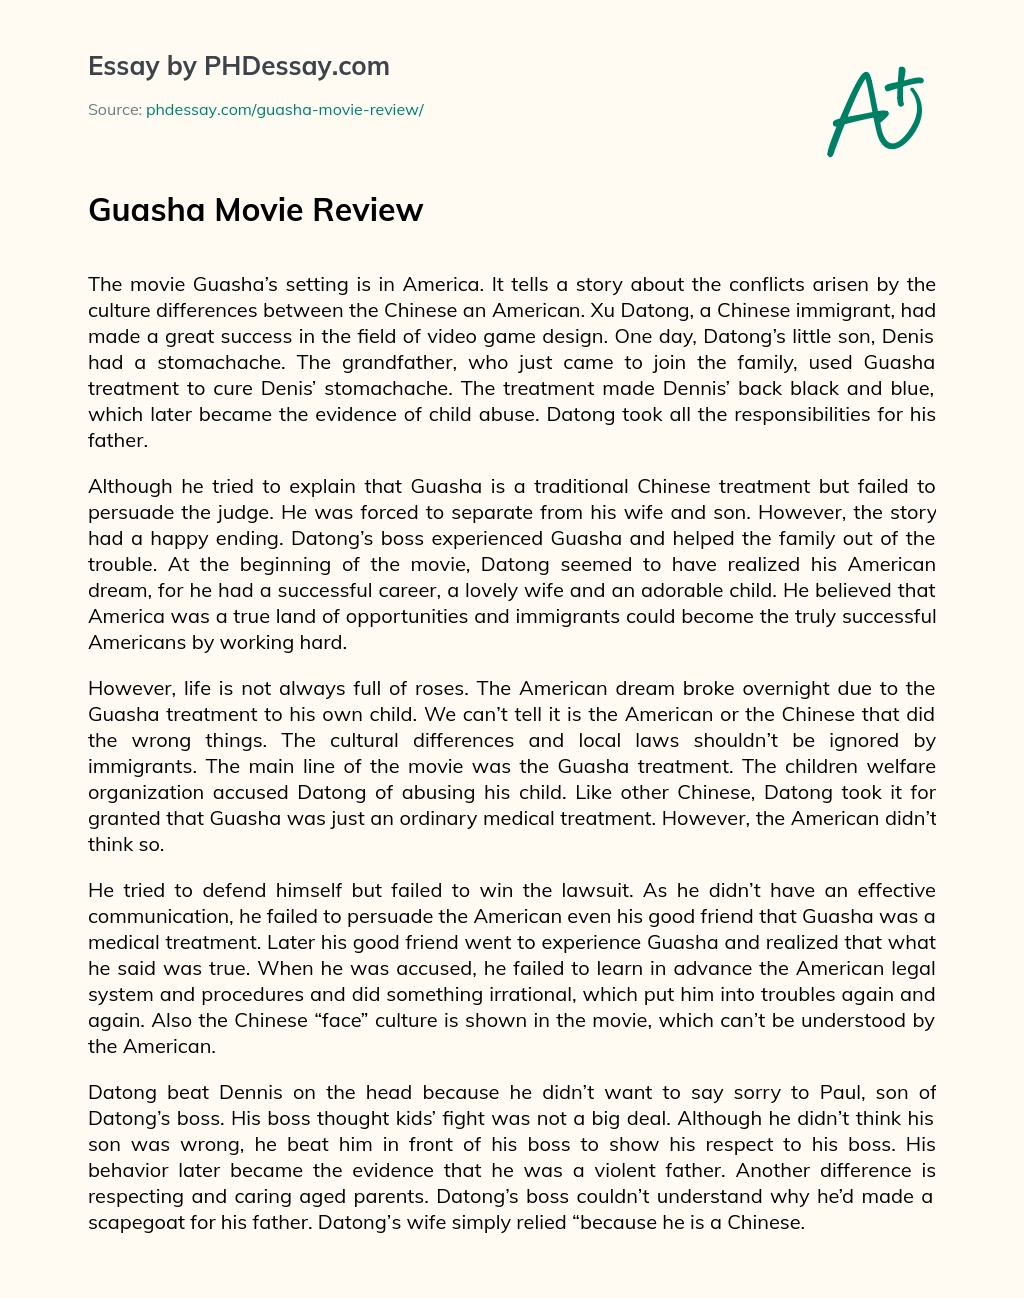 Guasha Movie Review essay